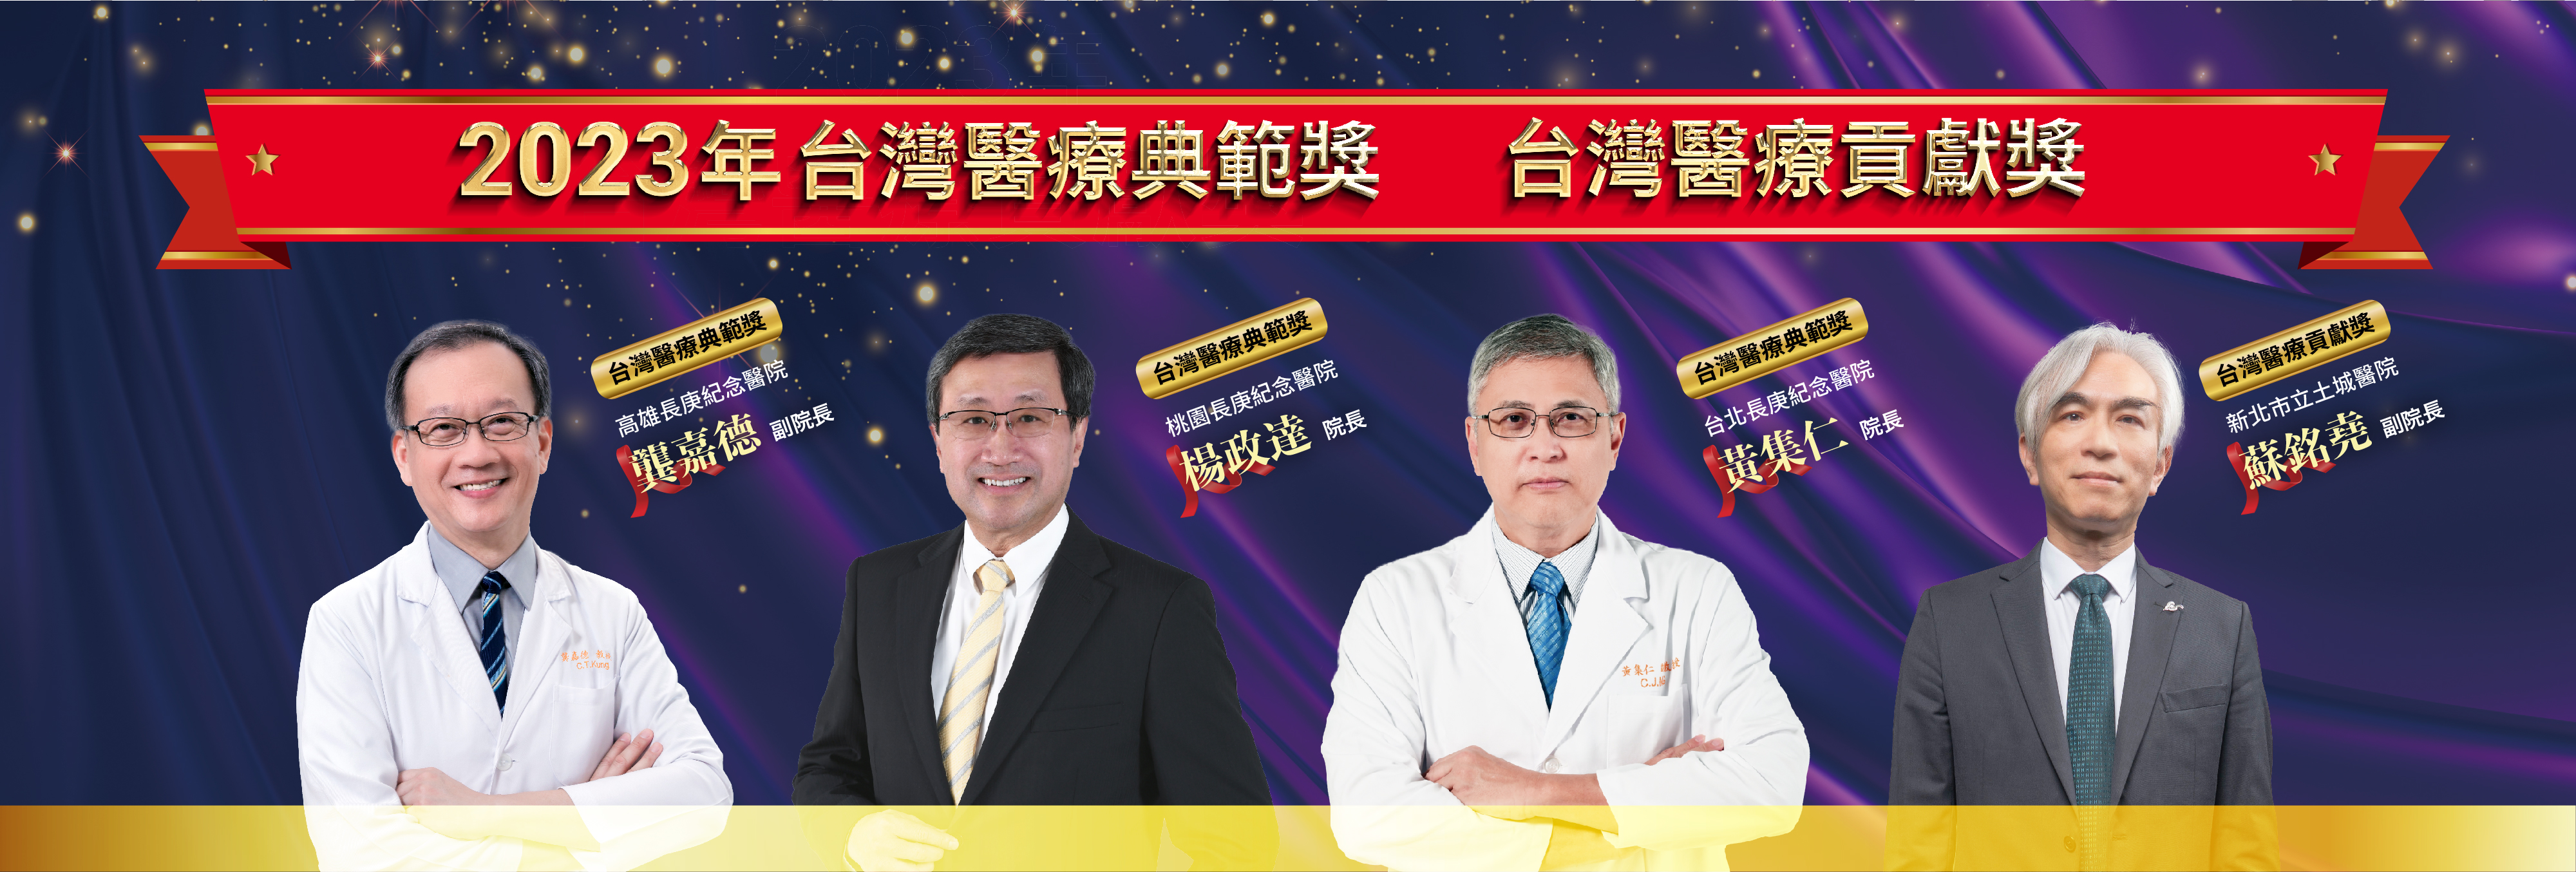 2023年台灣醫療典範獎、台灣醫療貢獻獎